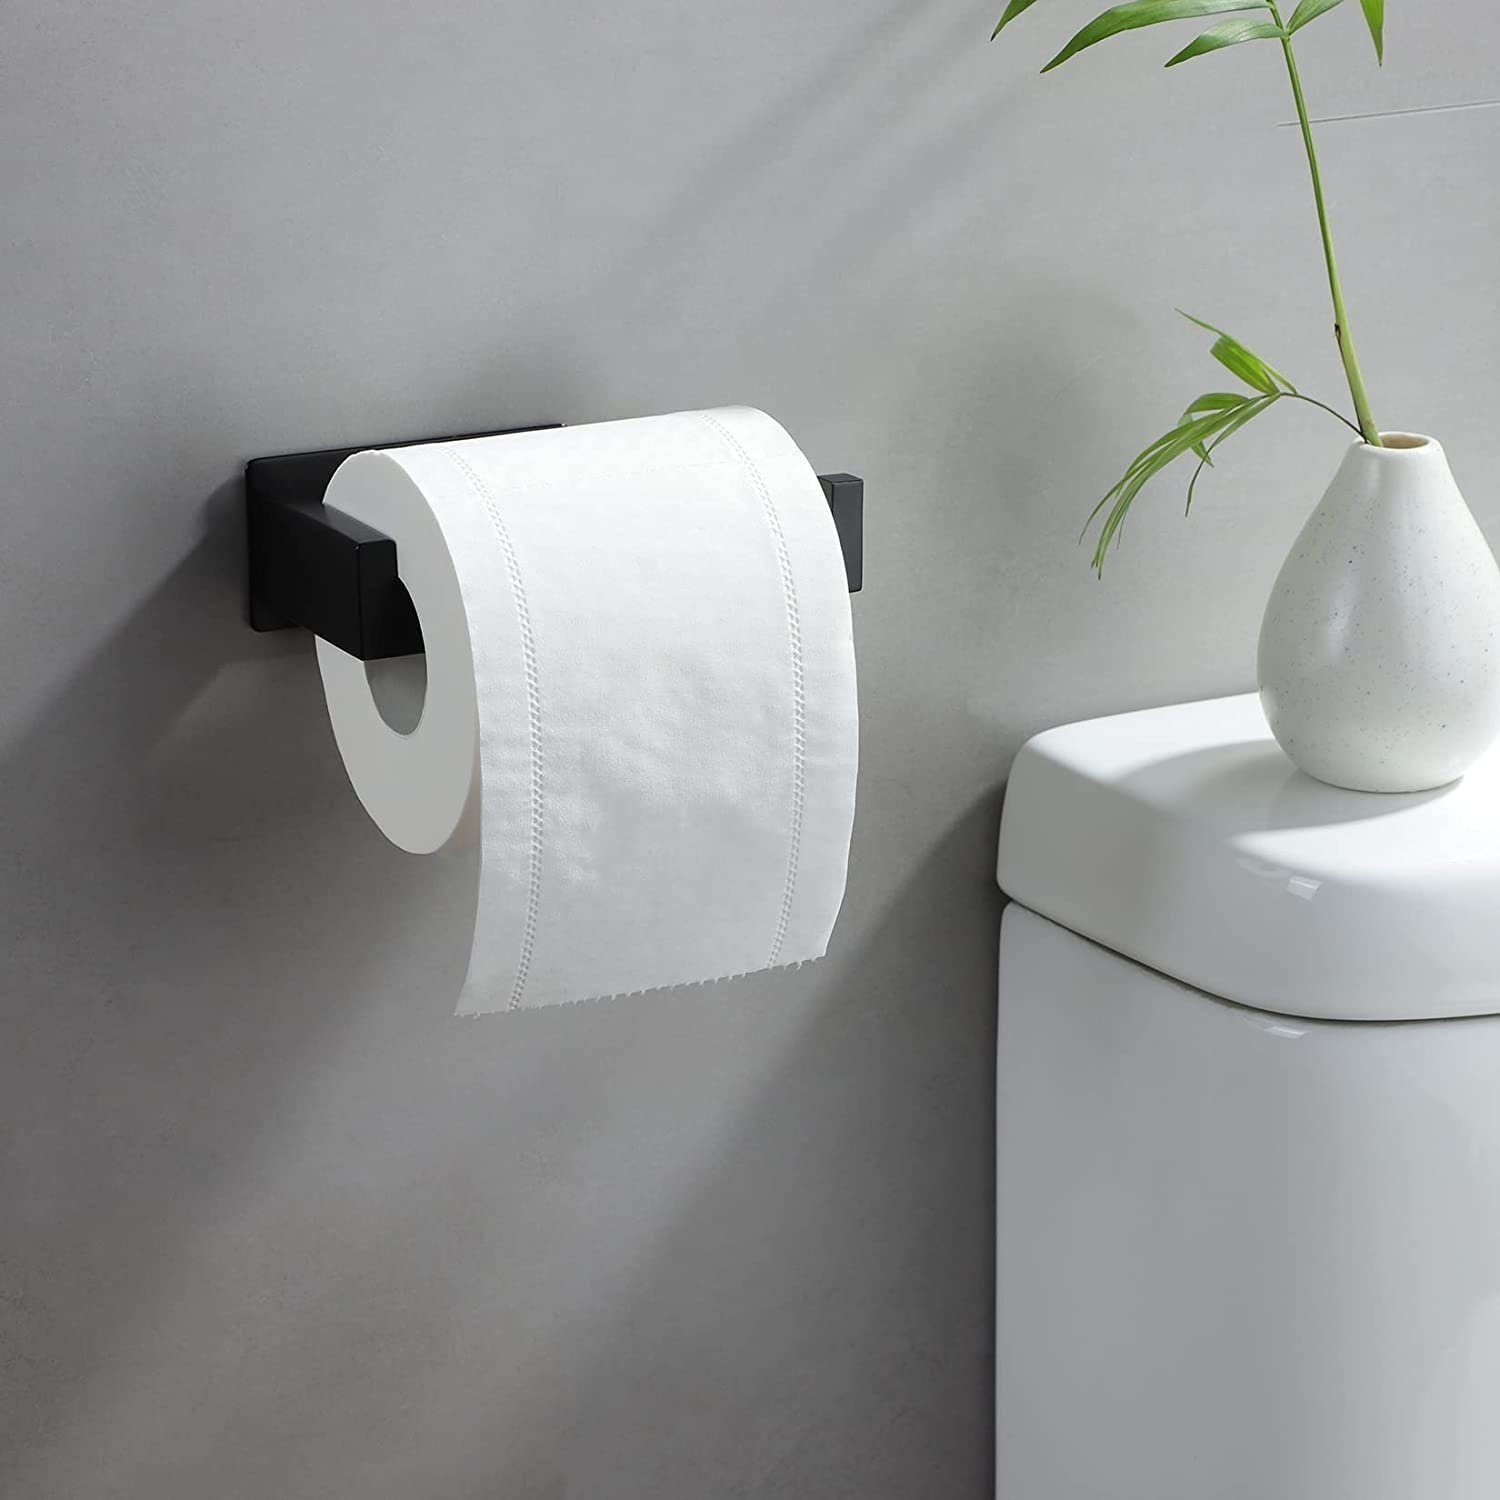 Haiaveng Toilettenpapierhalter erforderlich, Kein kein Bohren Bohren Toilettenpapierhalter, schwarz